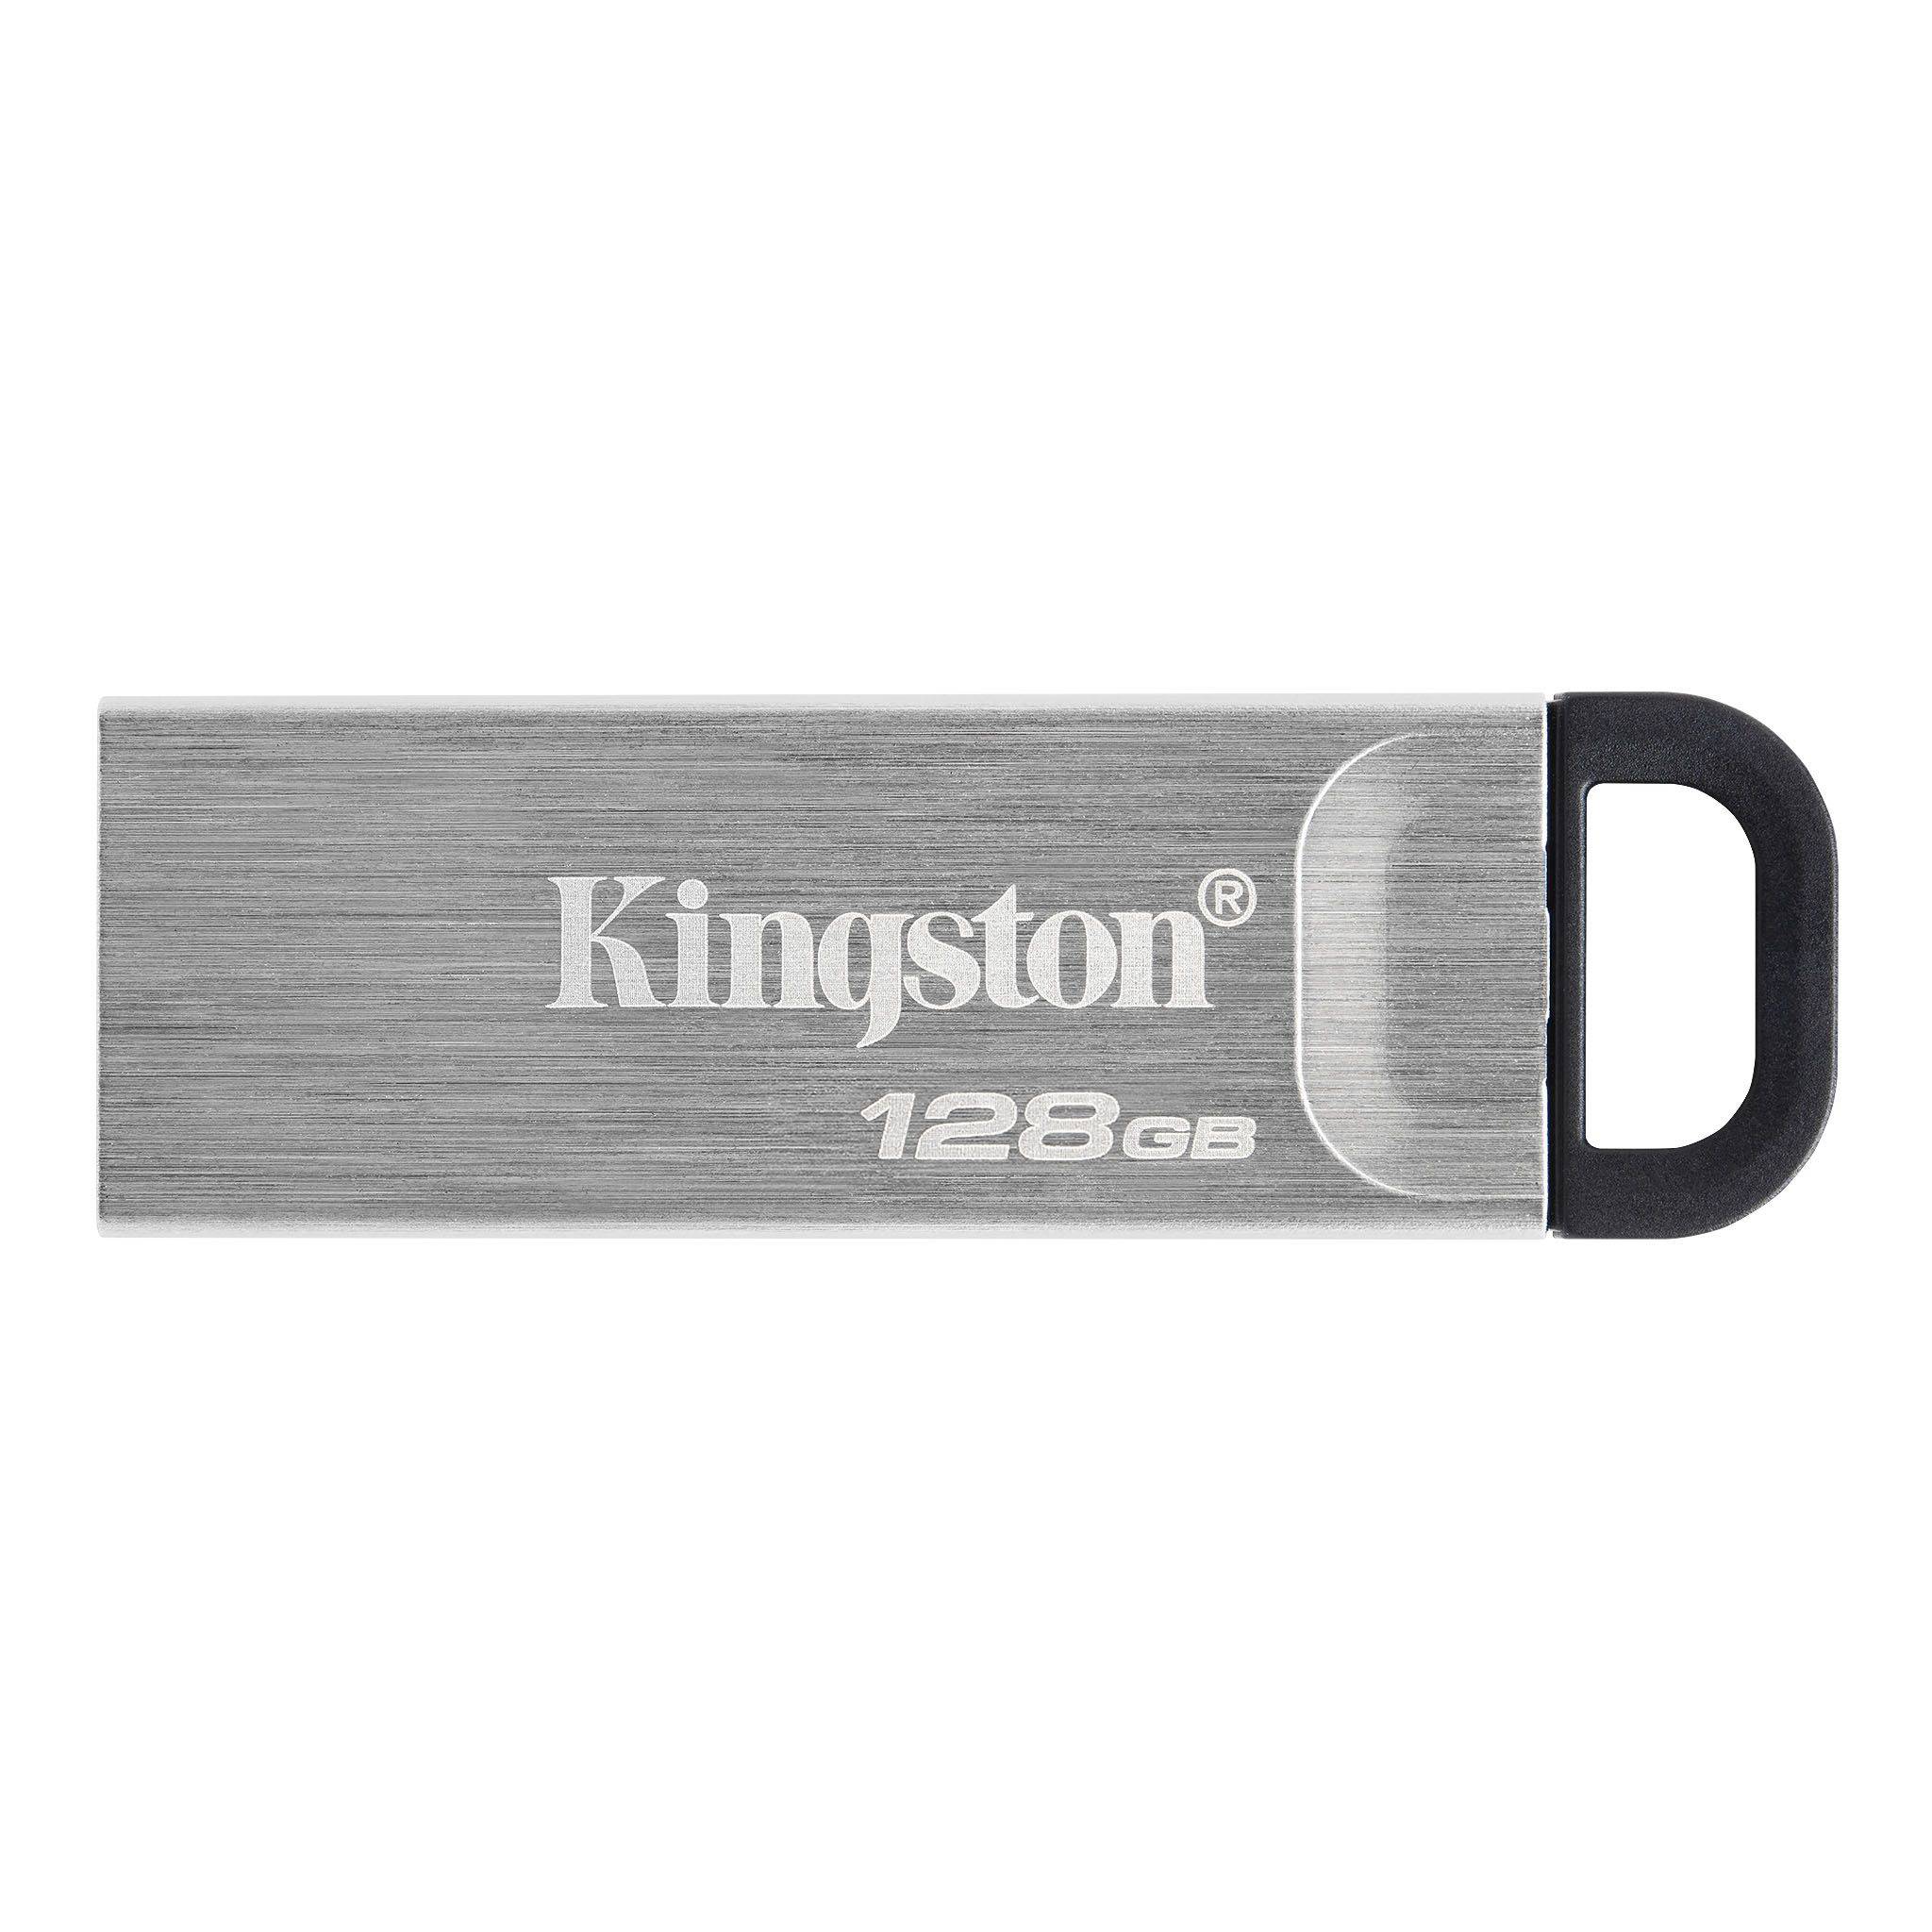 Obrázek Kingston DataTraveler Kyson/128GB/USB 3.2/USB-A/Stříbrná